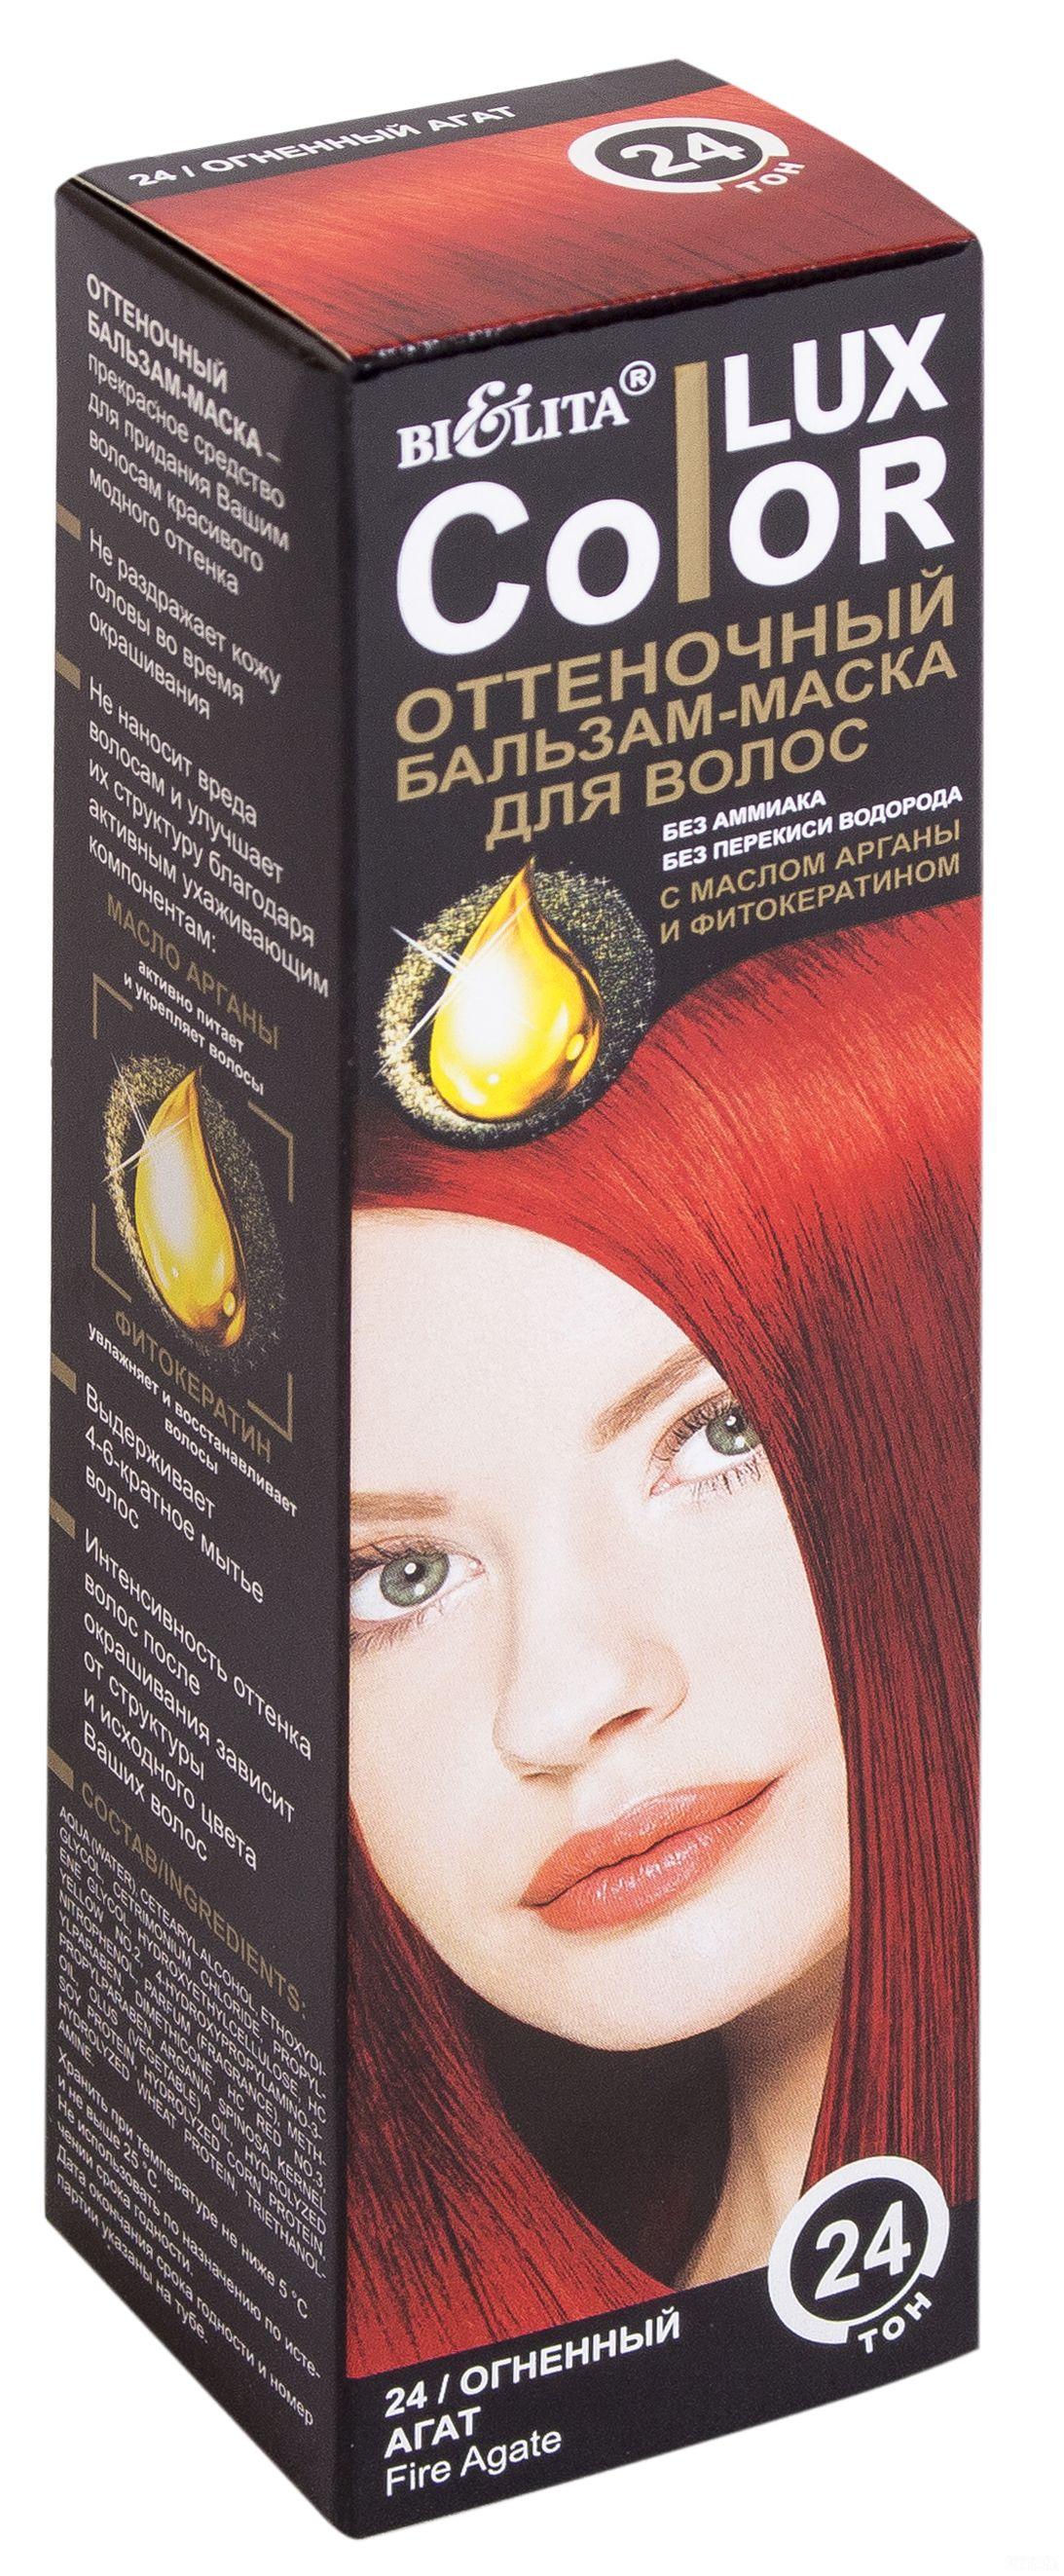 Бальзамы для окрашивания волос color